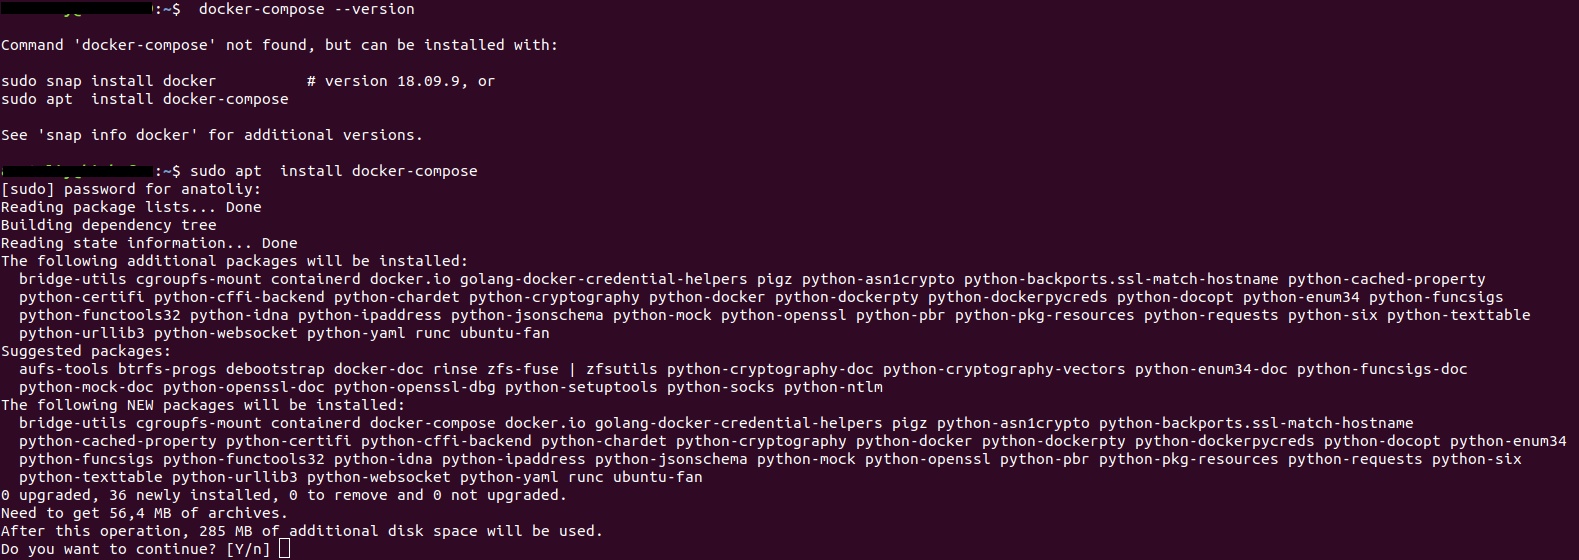 Symfony 5.0 on Nginx + PHP FPM under Docker [Part 1]